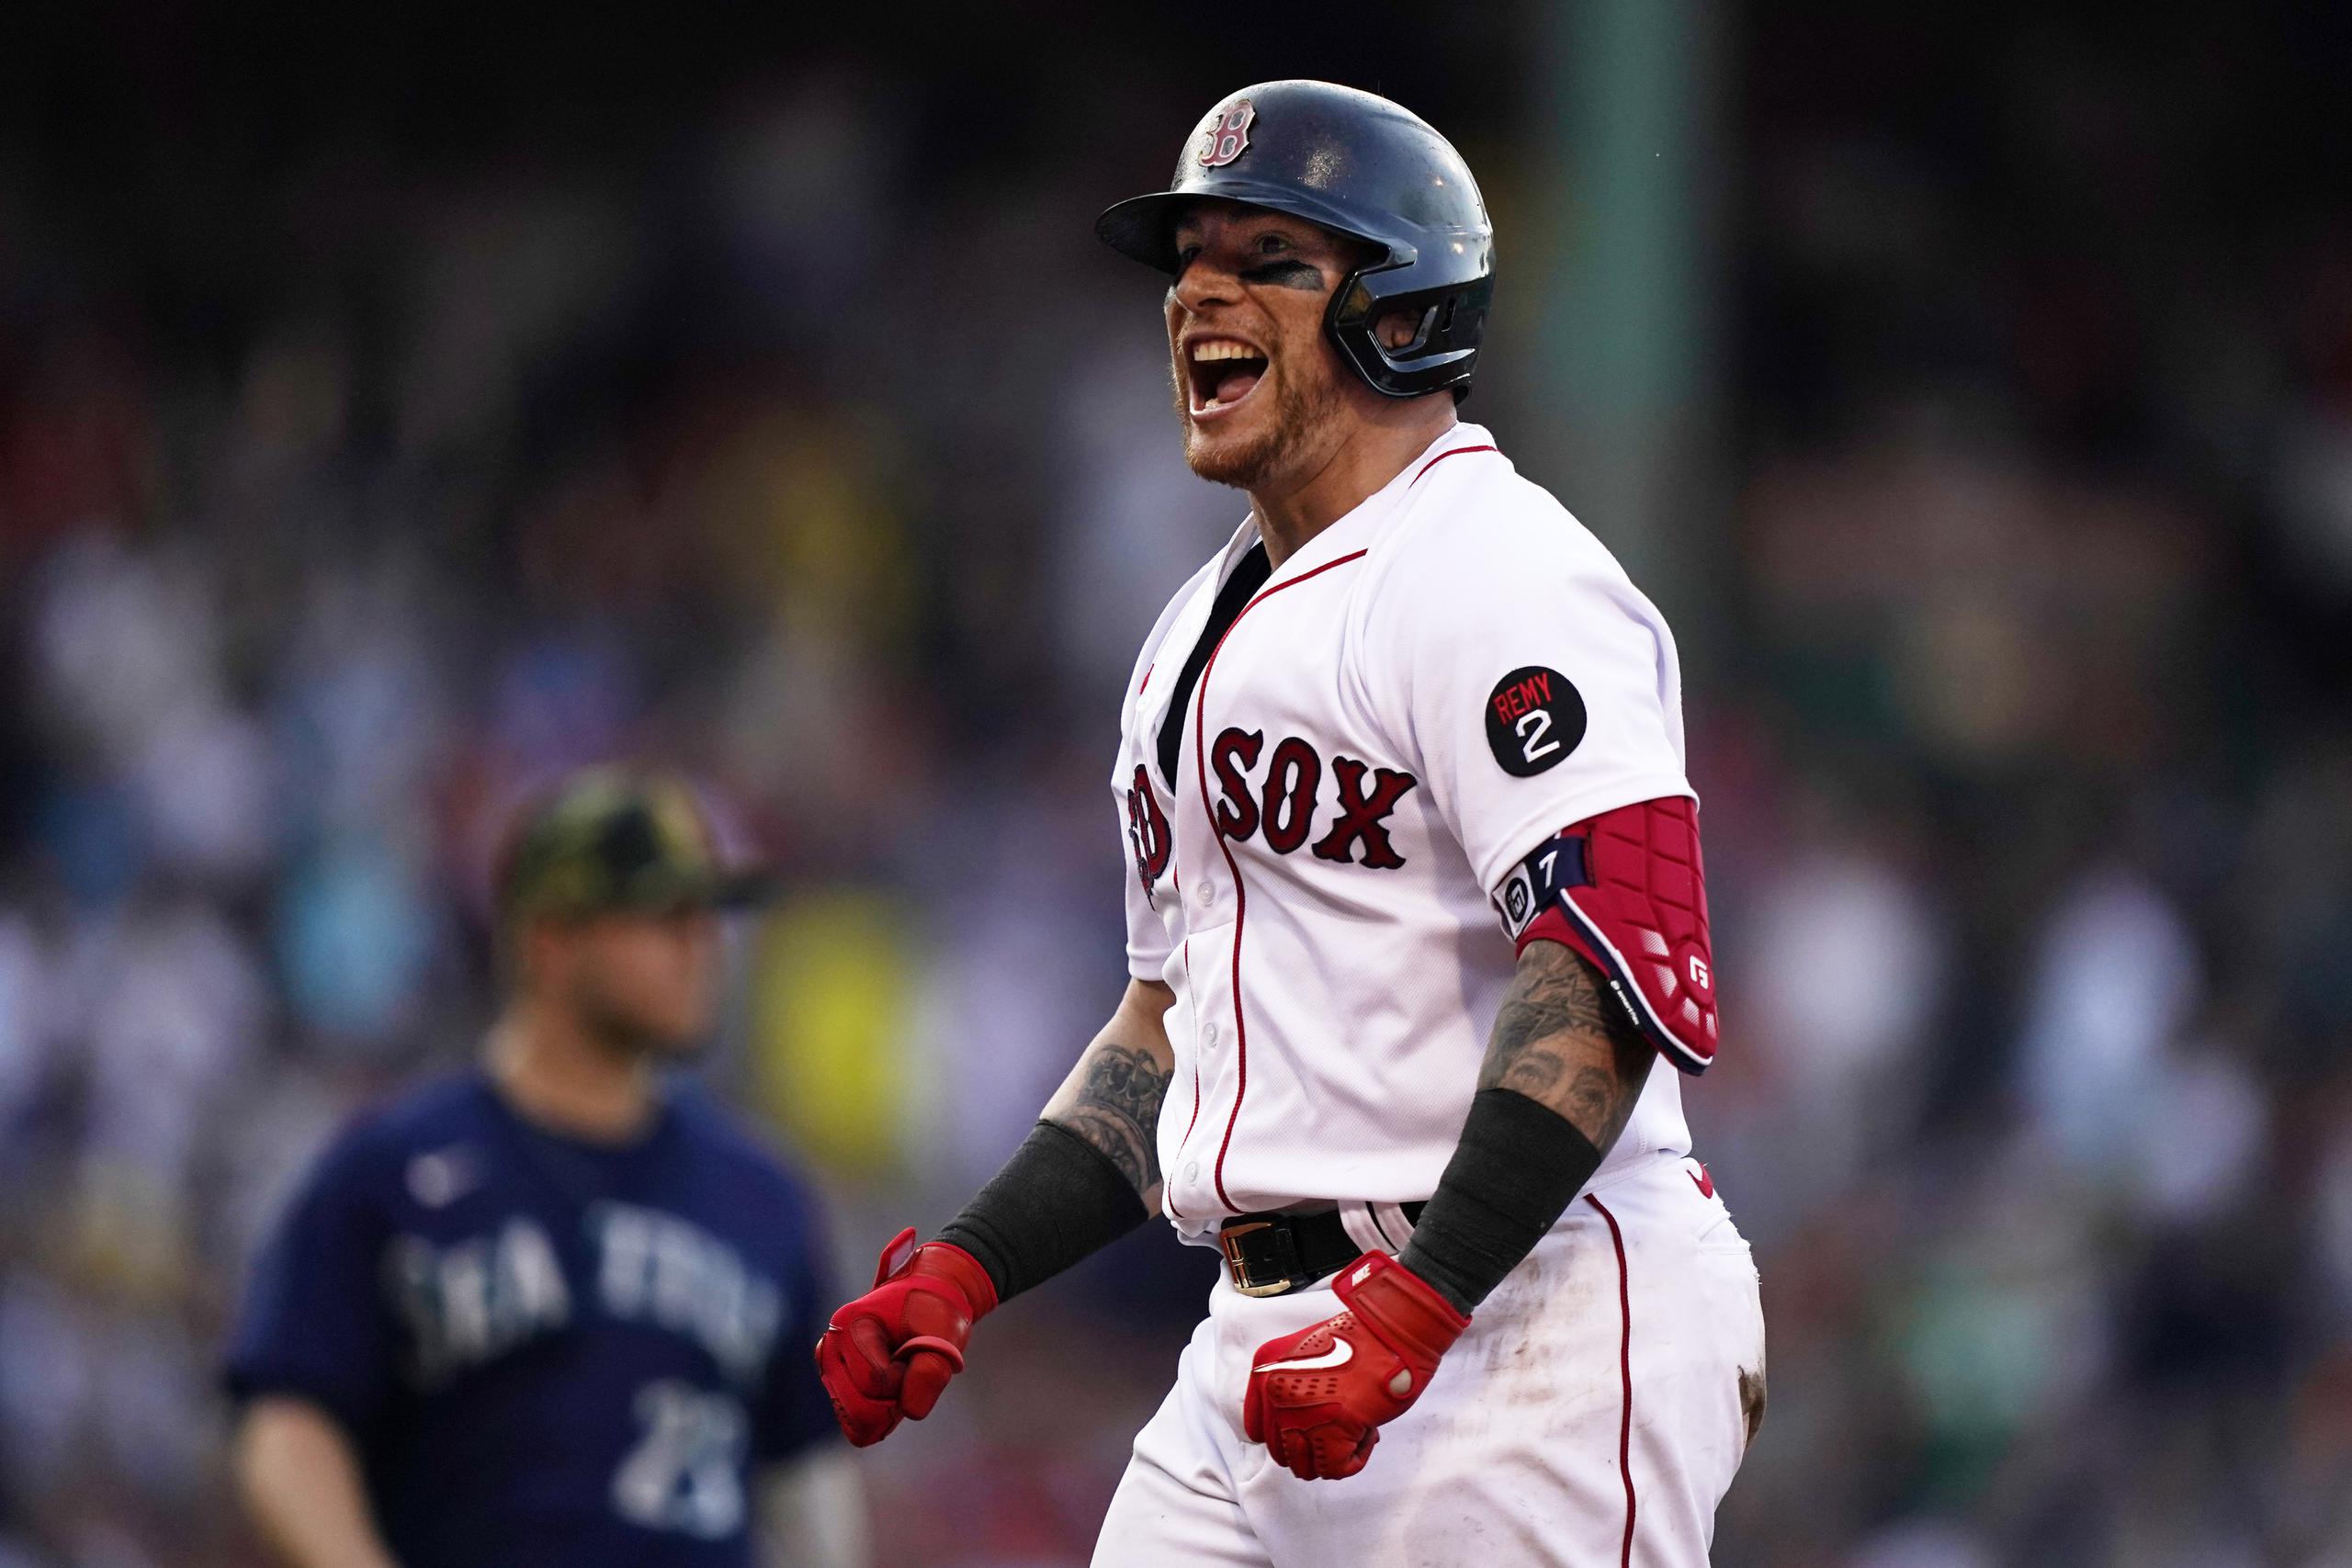 Tras pegar su importante batazo del sábado ante los Mariners, el receptor de los Red Sox de Boston, el boricua Christian Vázquez festeja su actuación.